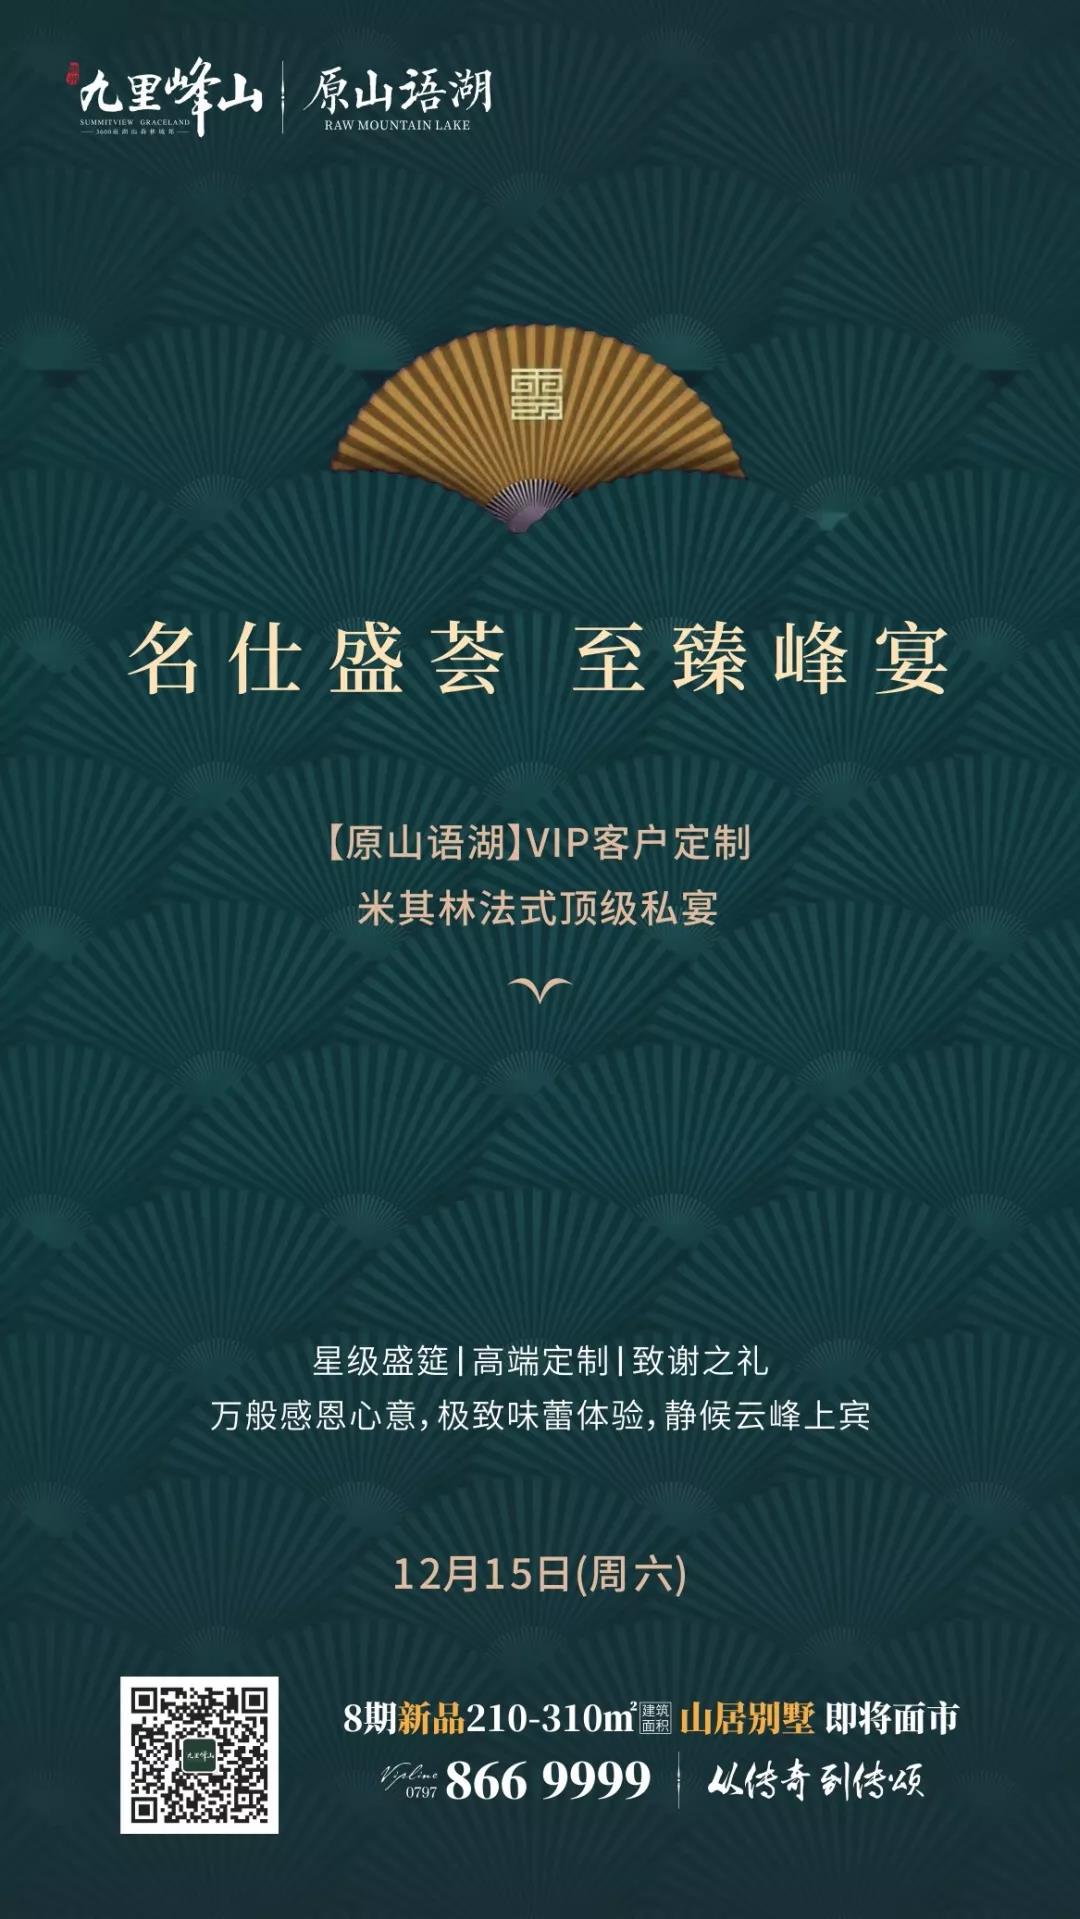 九里峰山周末将开启米其林美食盛宴 星级主厨亮相-中国网地产